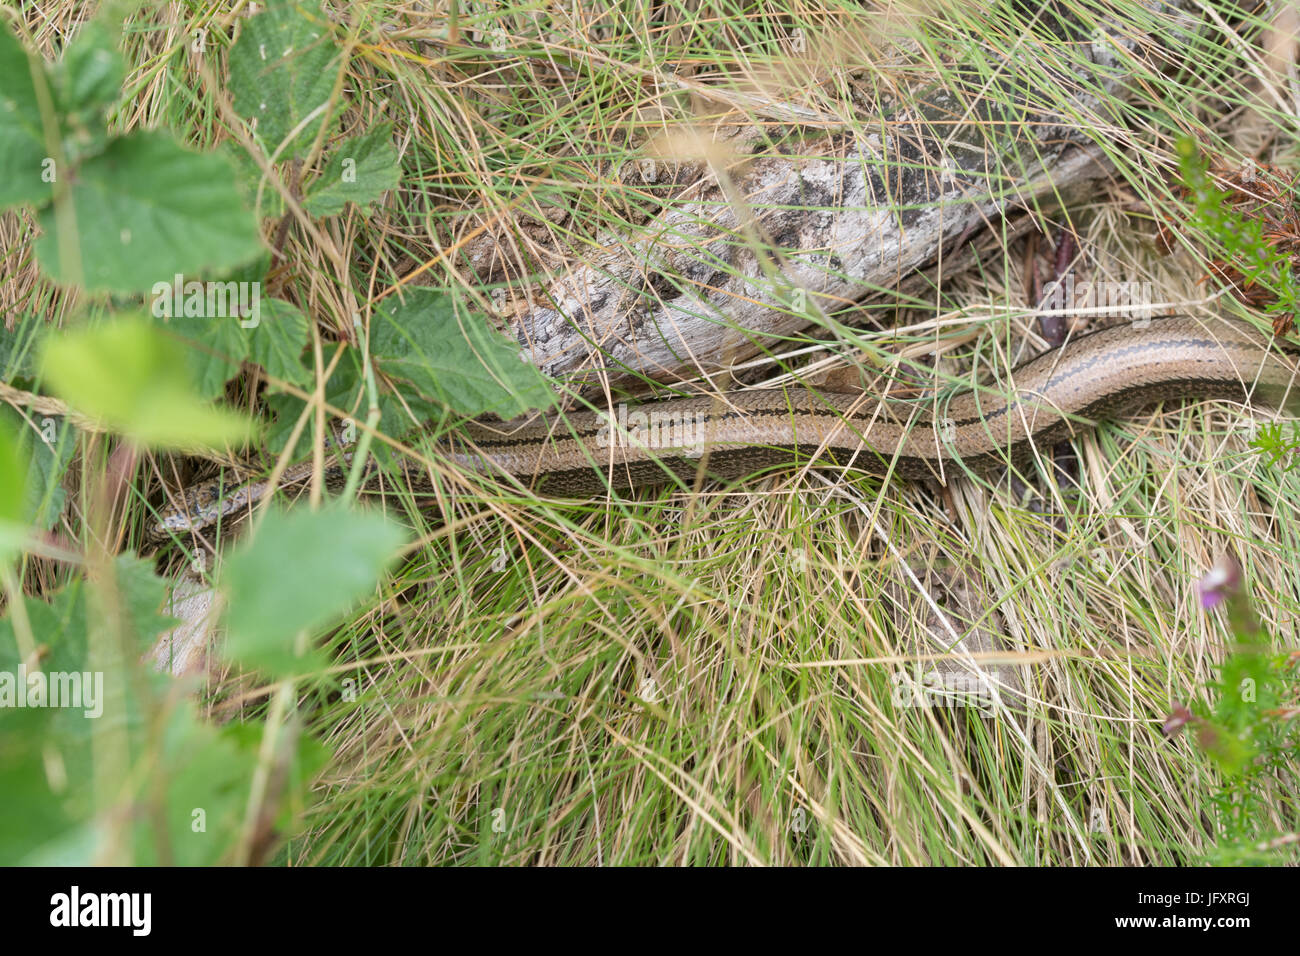 Slow worm (Anguis fragilis) basking among grass in heathland habitat, UK Stock Photo